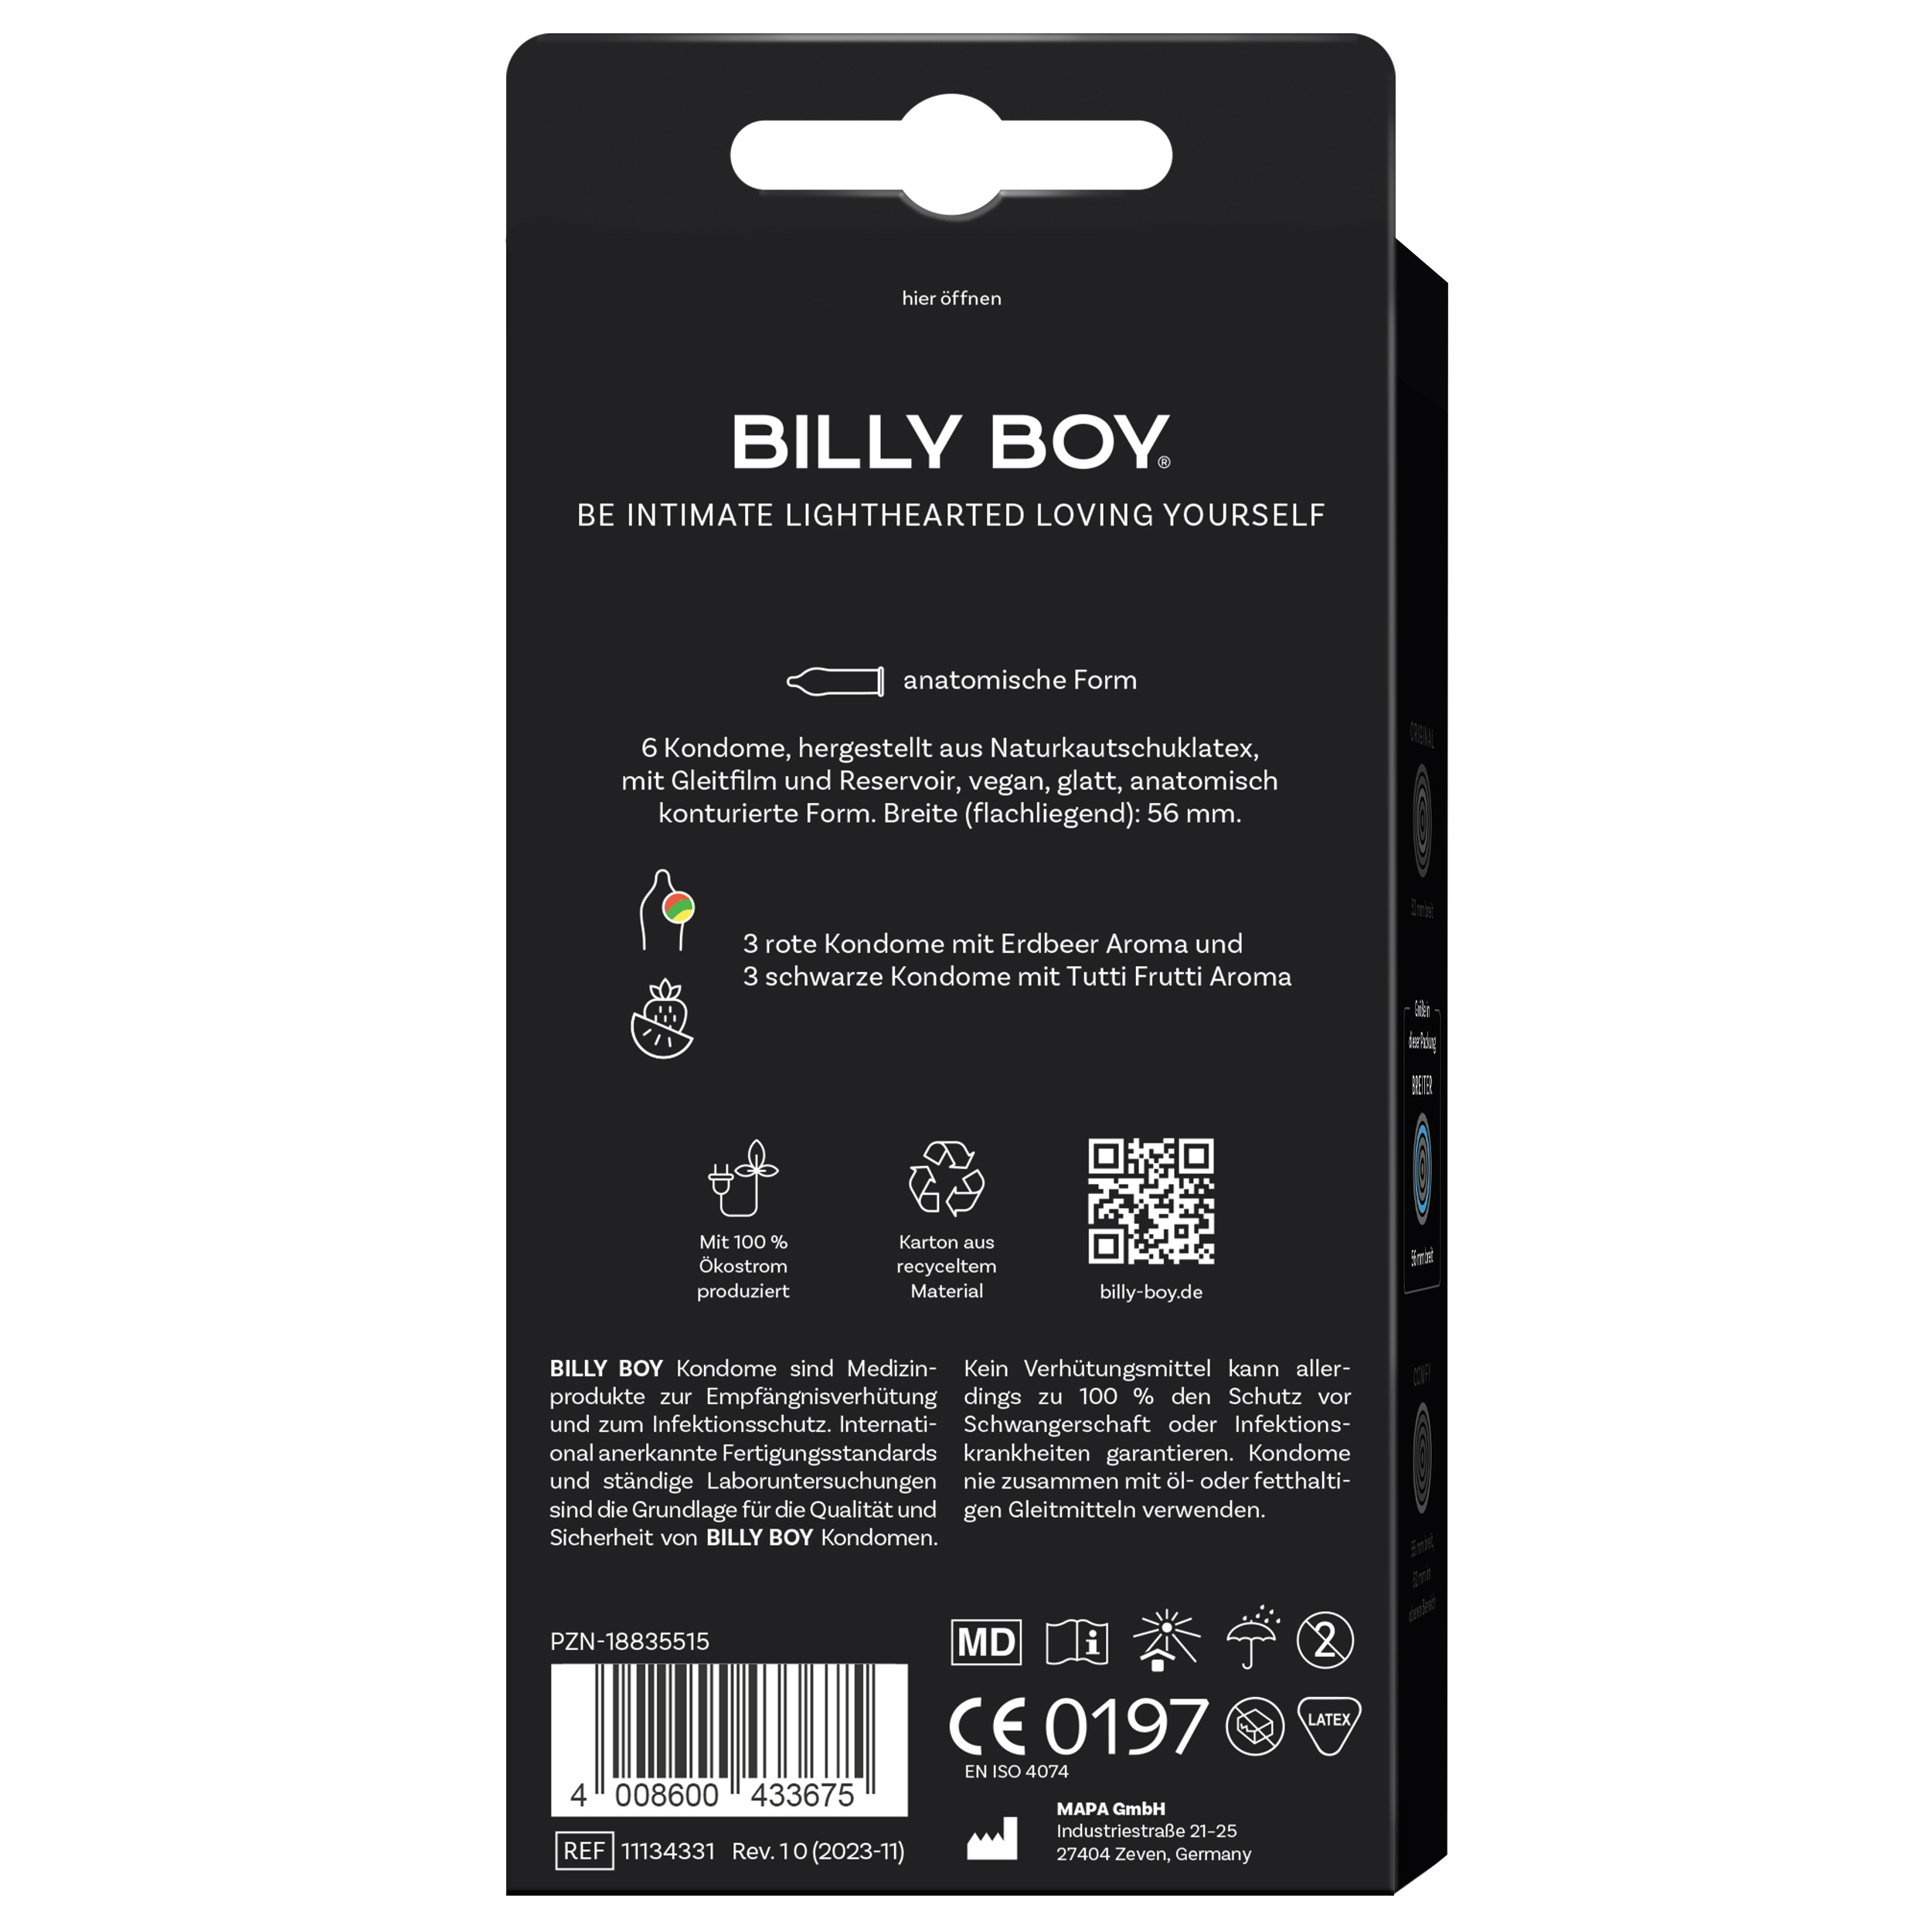 BILLY BOY Aroma Mix 6 St. SB-Pack.